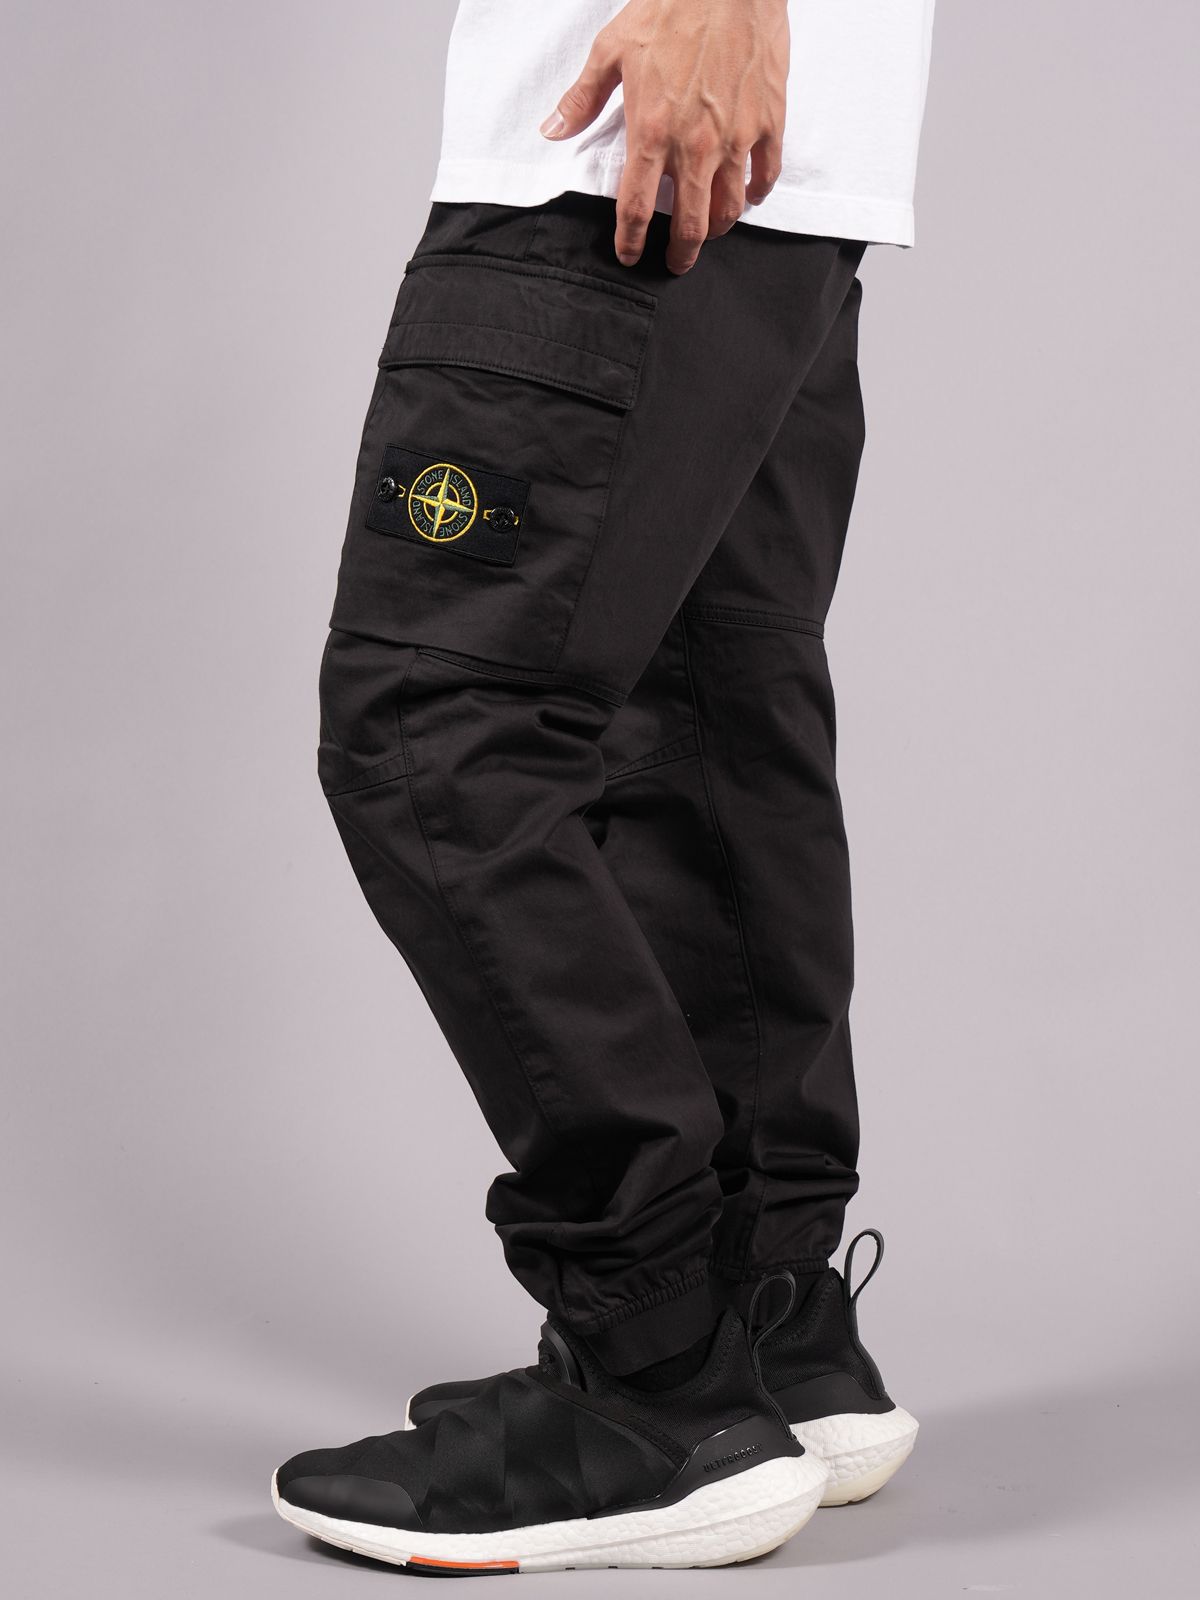 stoneisland 20aw pantalon cargo pants